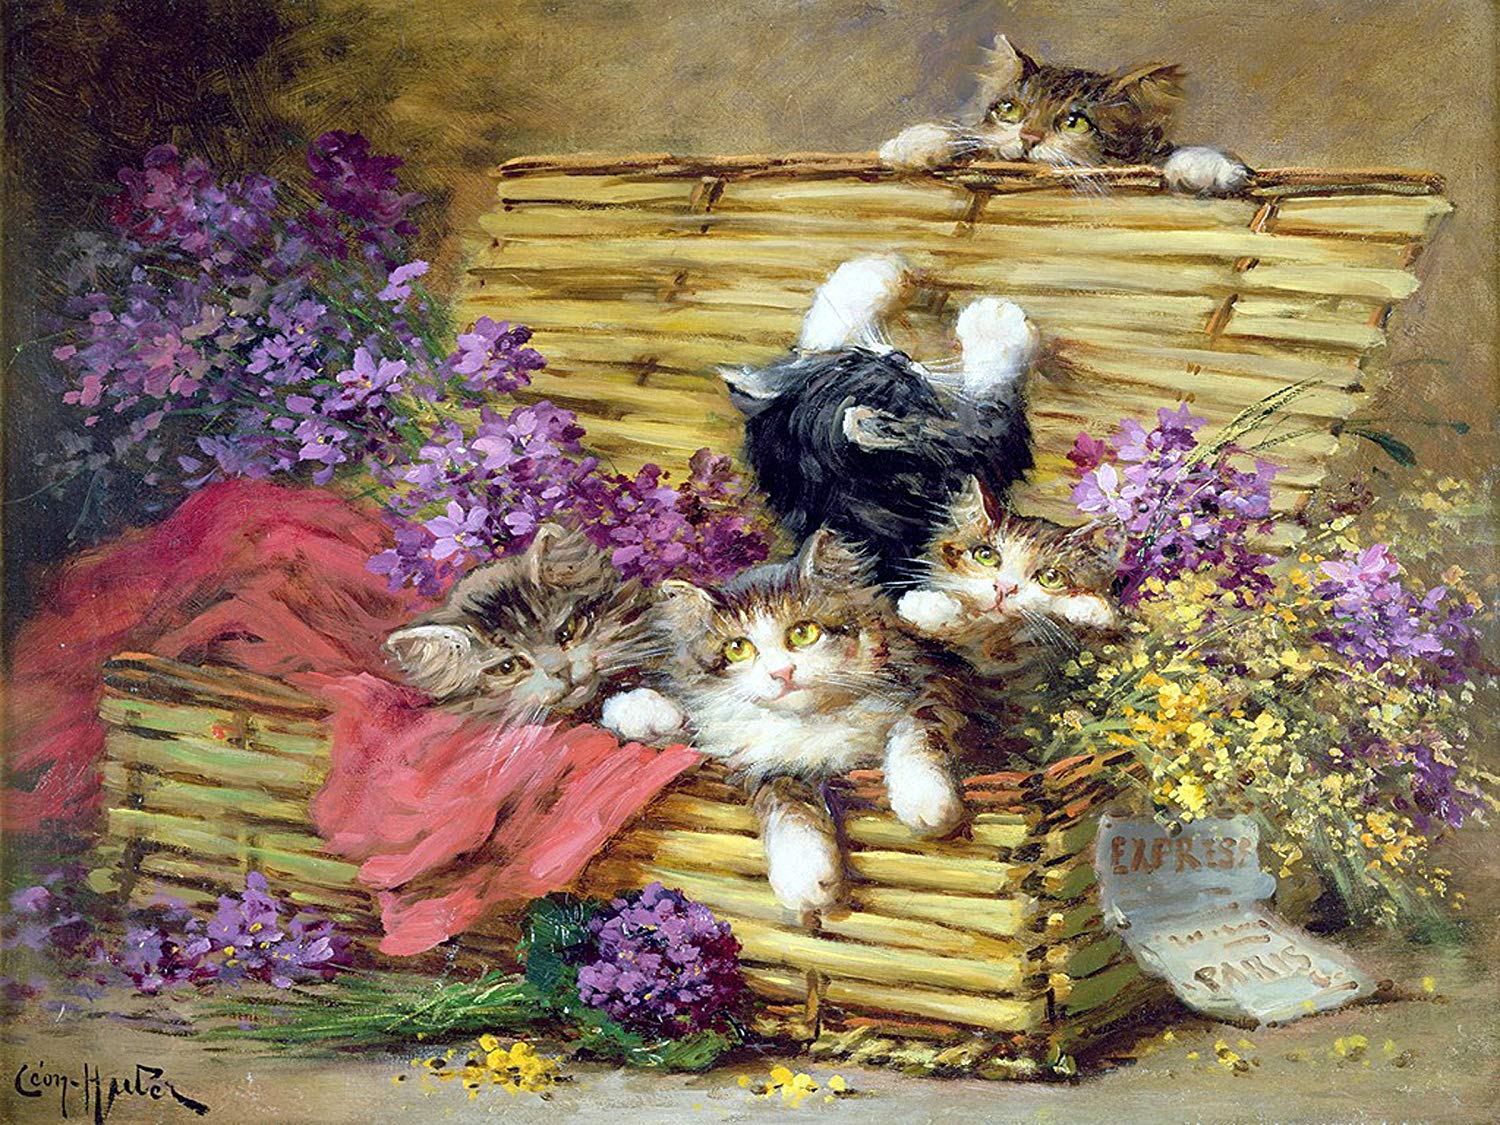 Французский художник Léon Charles Huber и его непоседливыe озорные котята